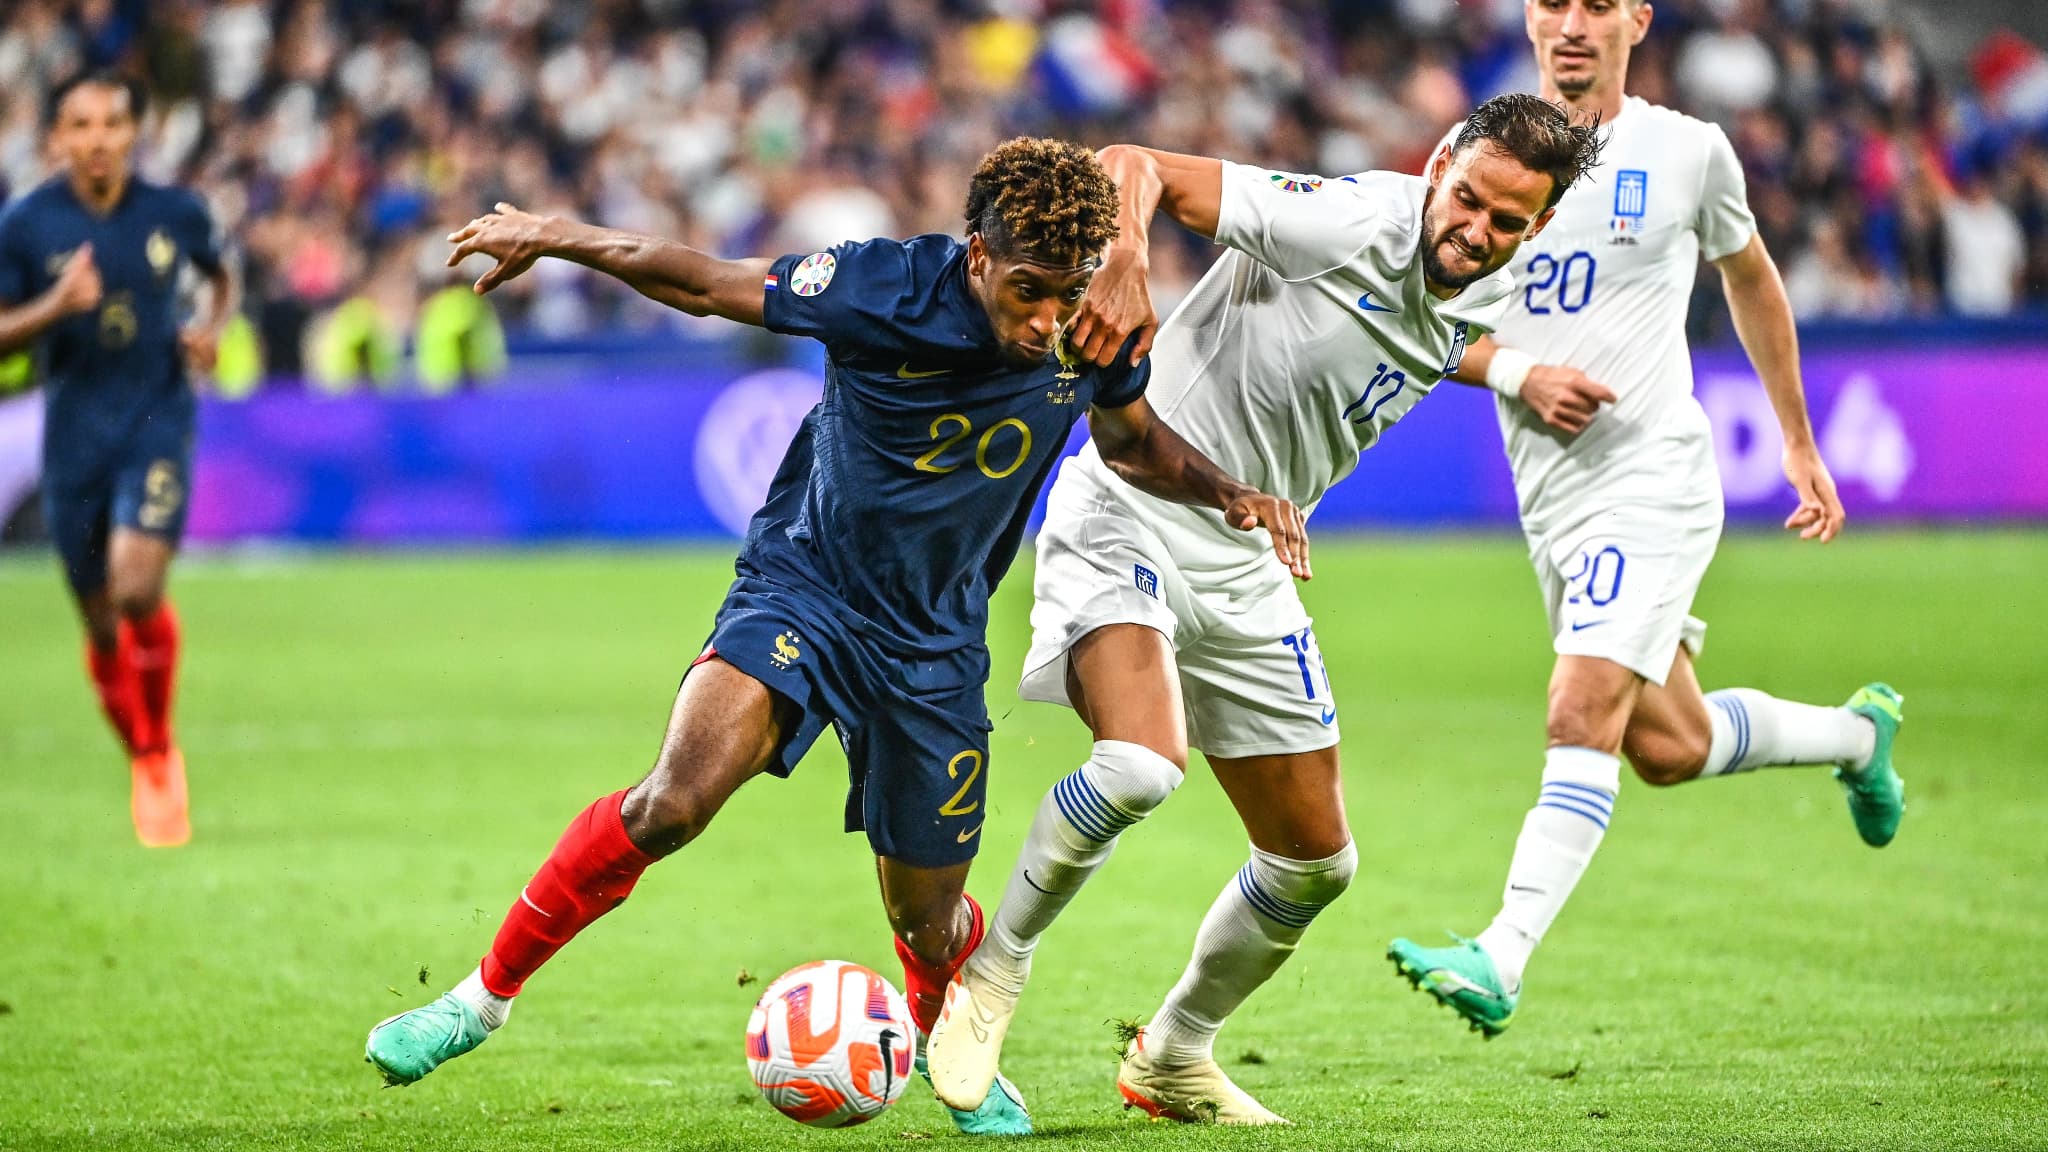 La victoire des Bleus était une chance que le foot français n'a pas  (encore) su saisir